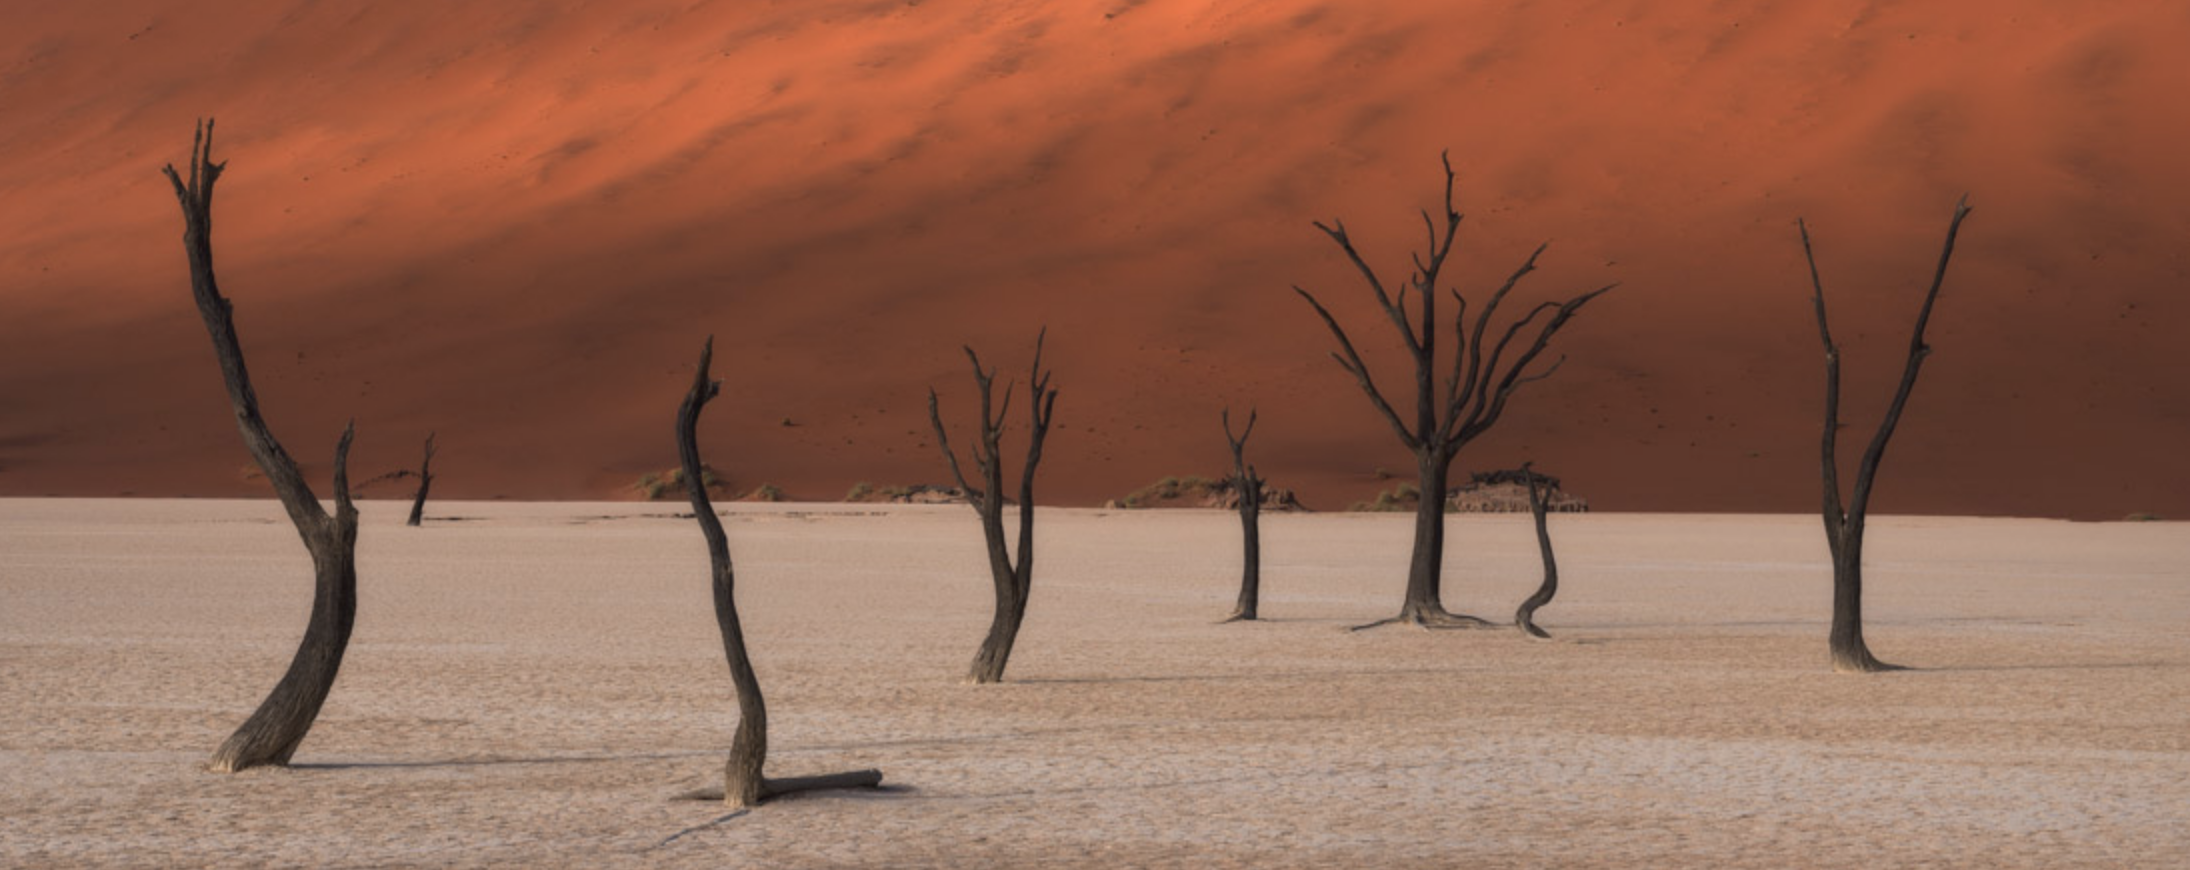 Фото © автор картинки/ The EPSON International Pano Awards Фото глиняного плато Дедвлей ("мёртвое болото") в Намибии принадлежит Стюарту Беллами из ЮАР